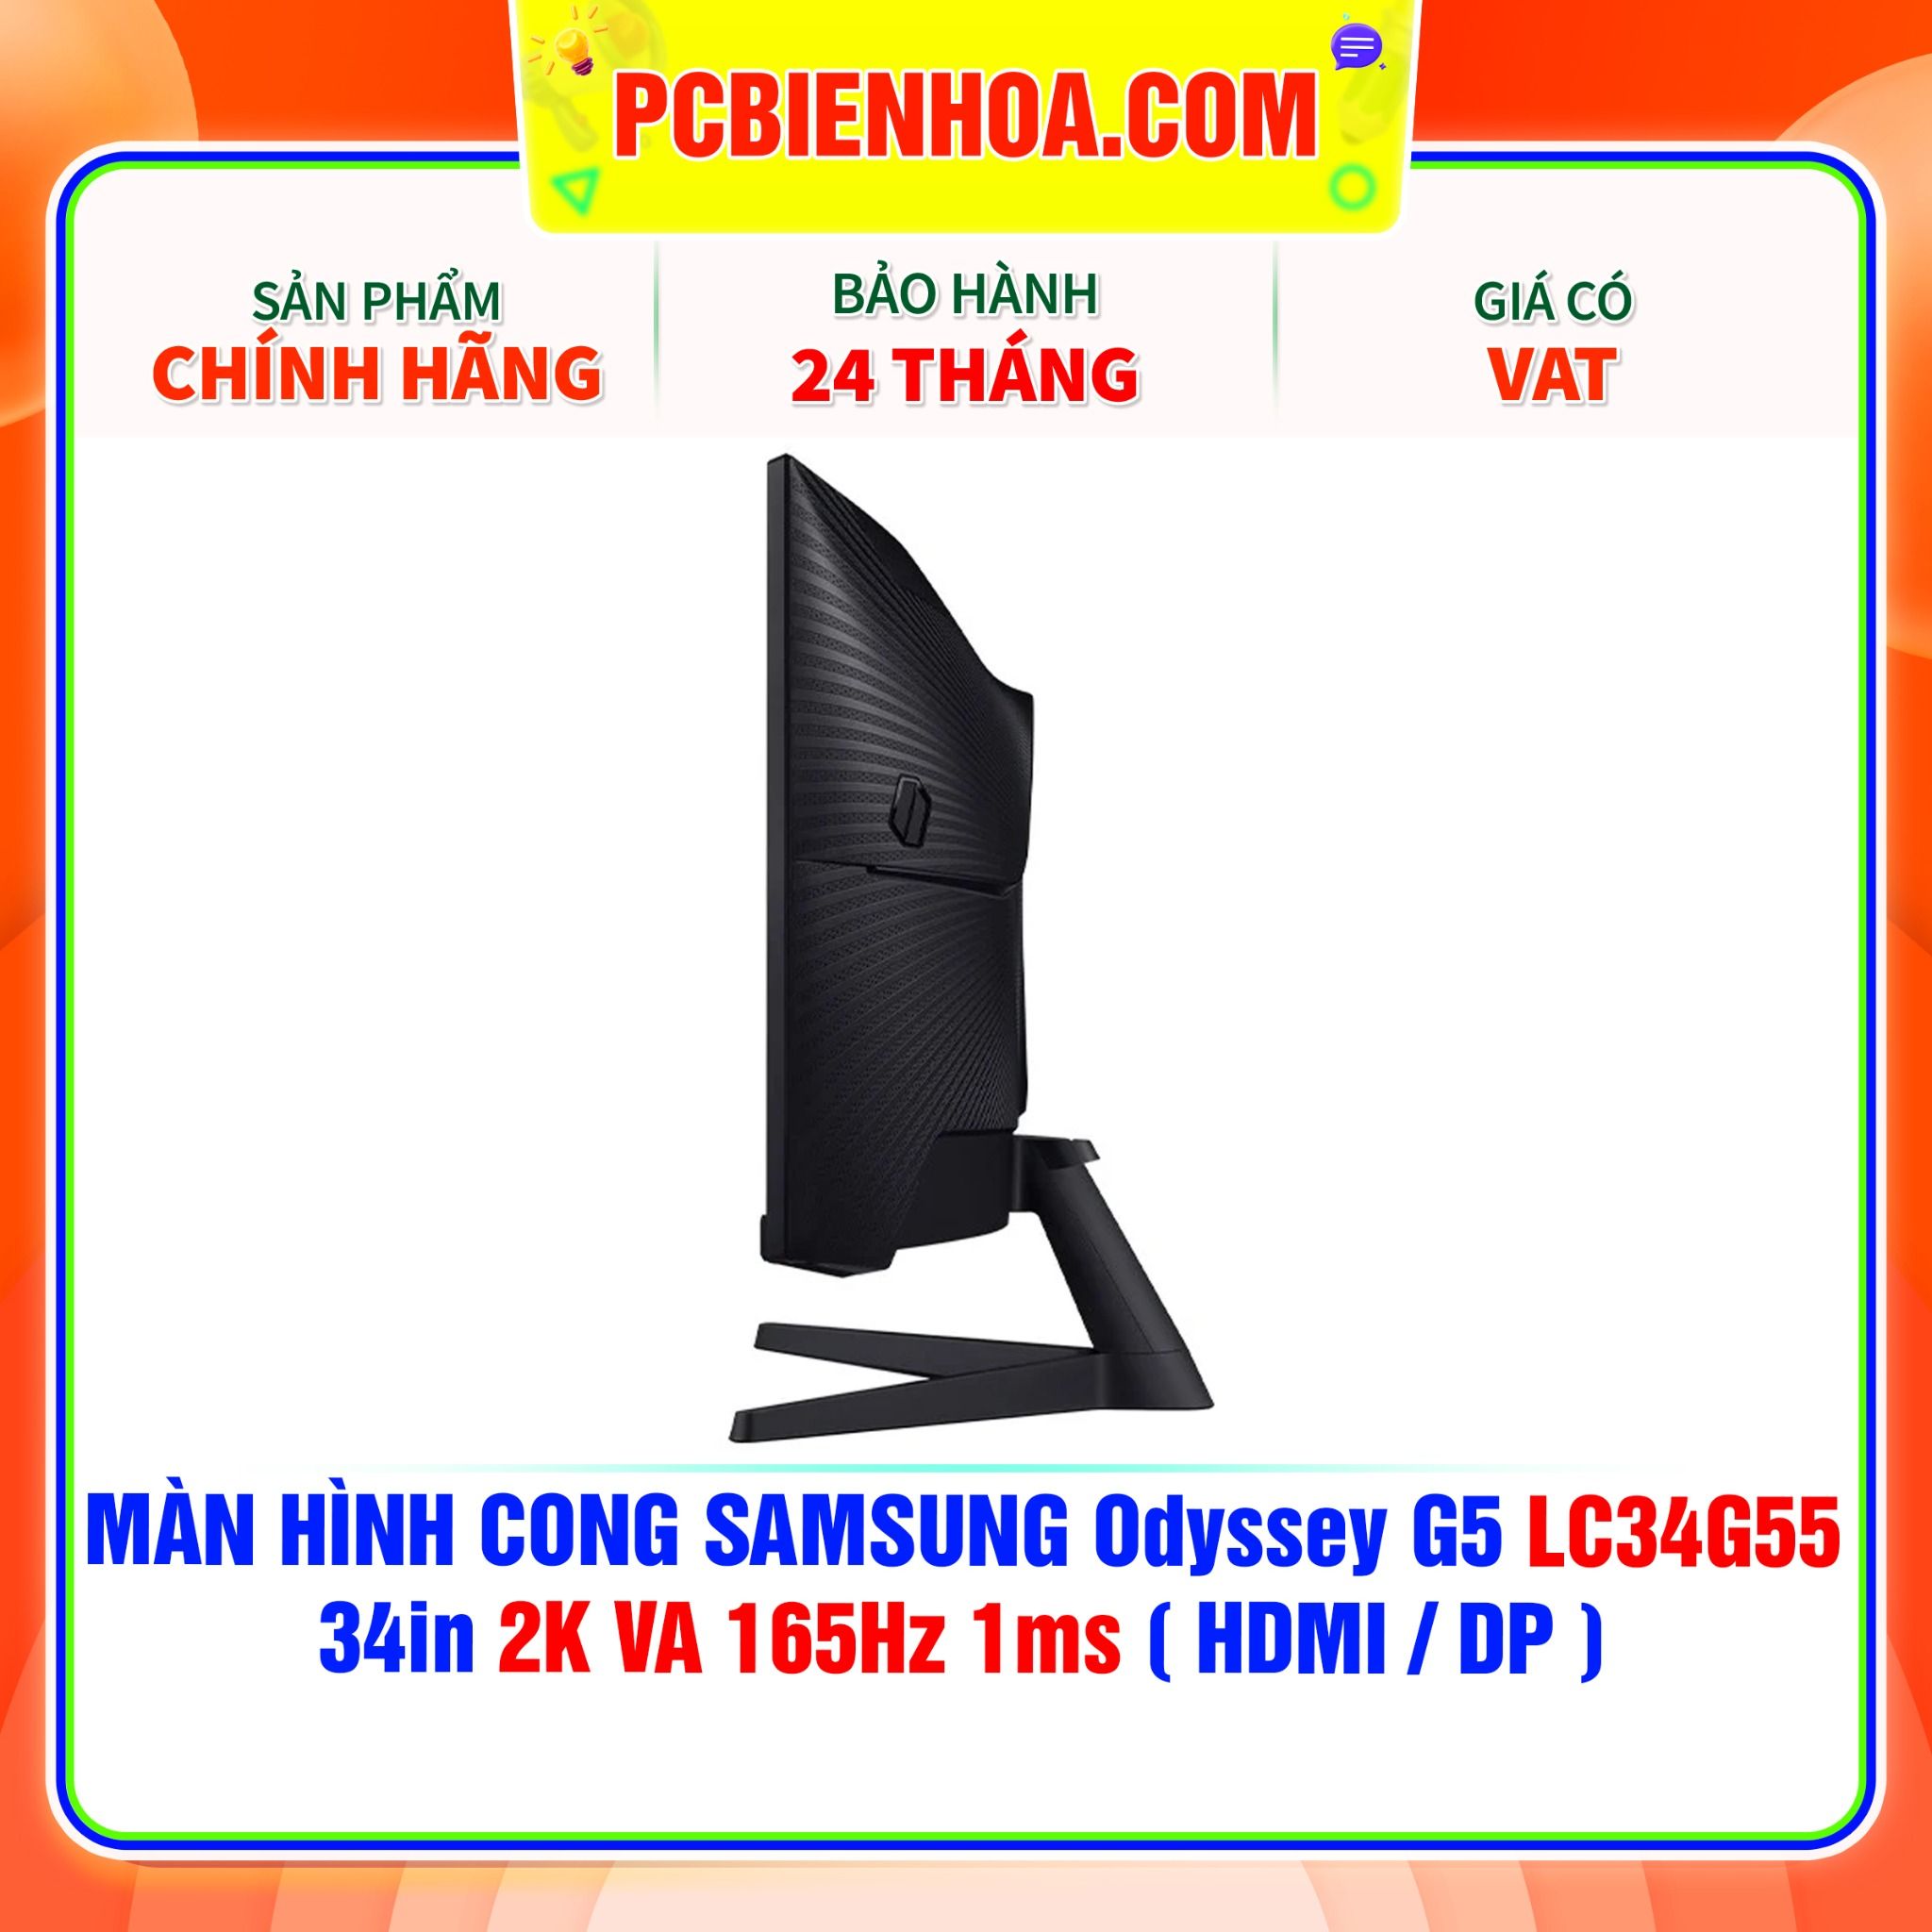  MÀN HÌNH CONG SAMSUNG Odyssey G5 LC34G55 34in 2K VA 165Hz 1ms ( HDMI / DP ) - LC34G55TWWEXXV 